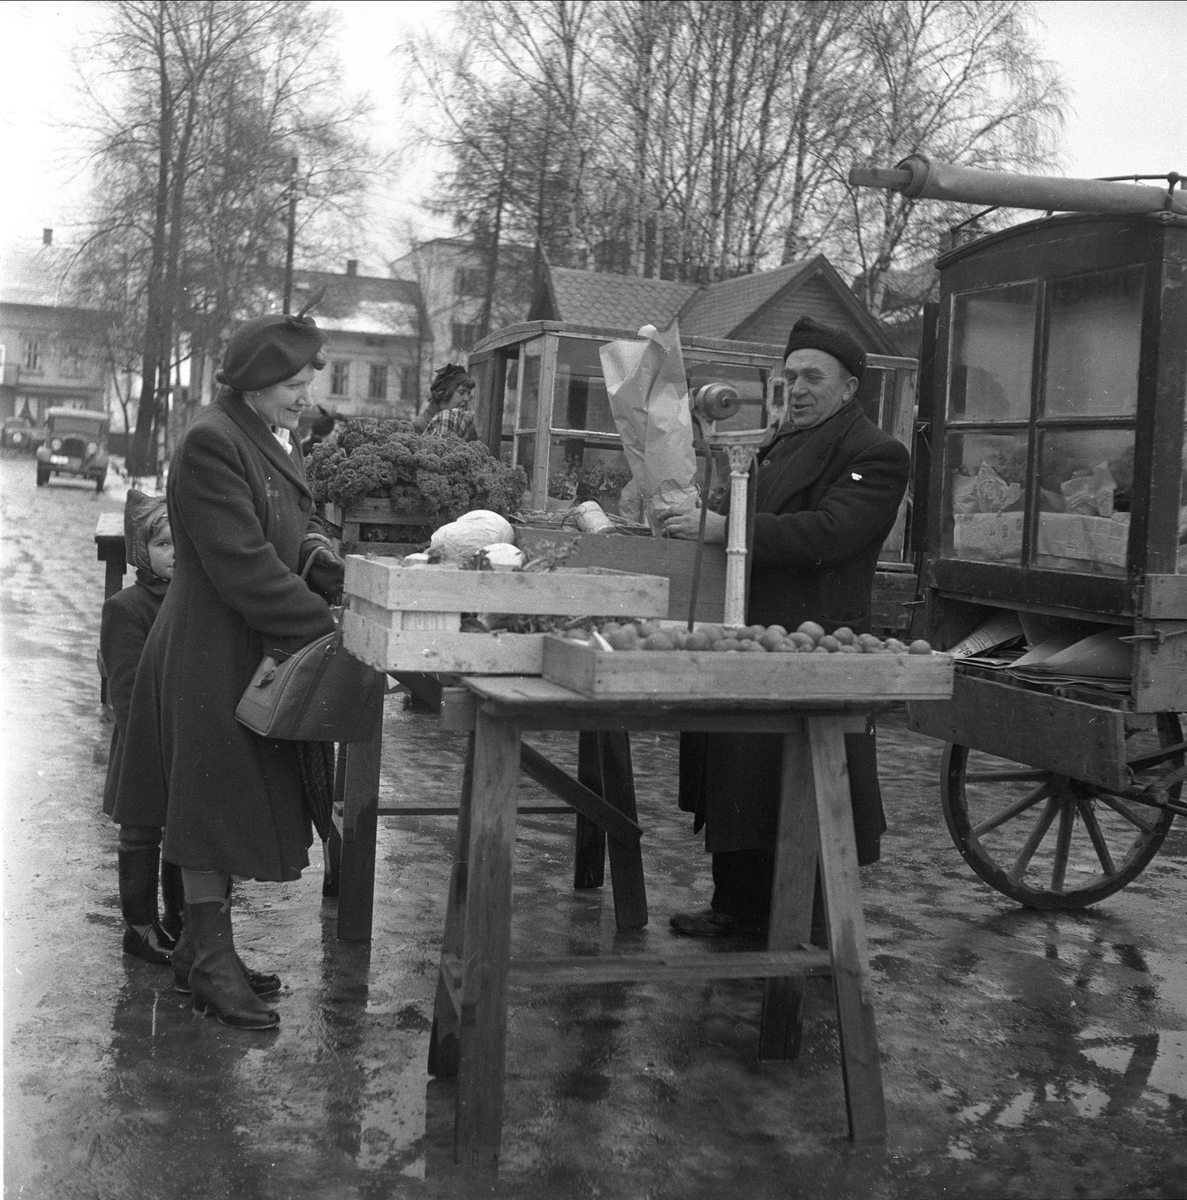 Lillestrøm, Skedsmo, Akershus, desember 1952. Torget, mann selger grønnsaker.